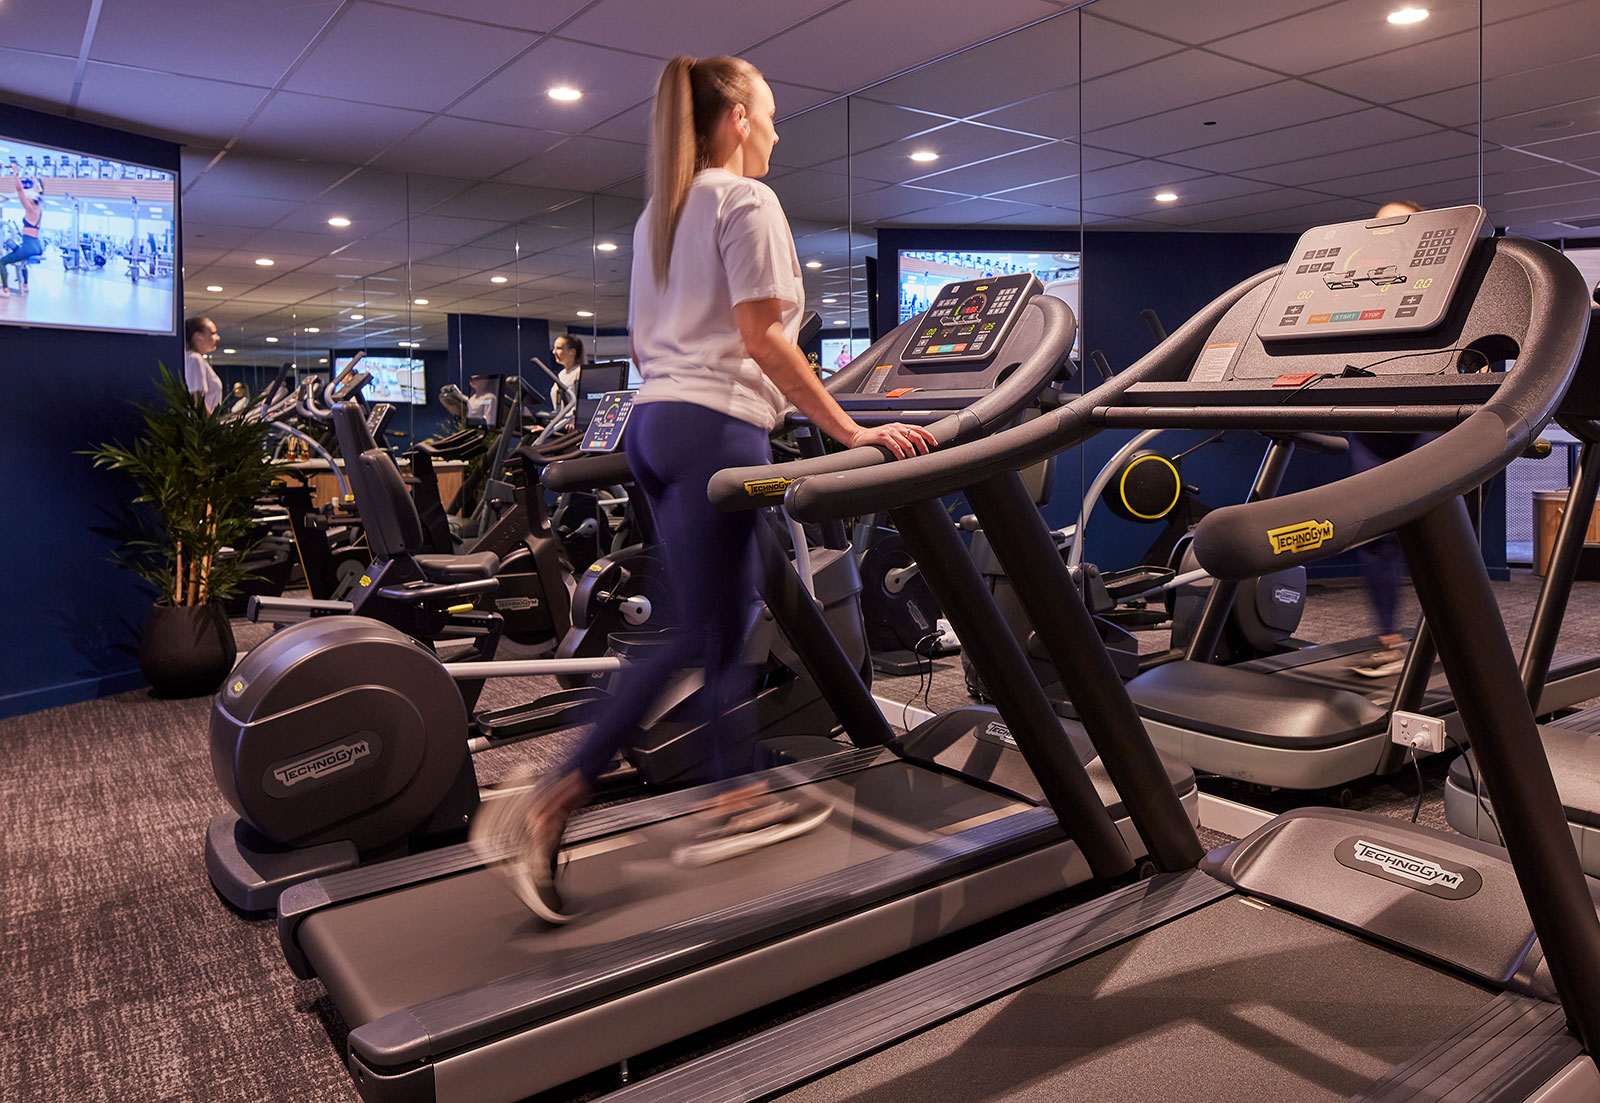 Gym-Girl-Treadmill